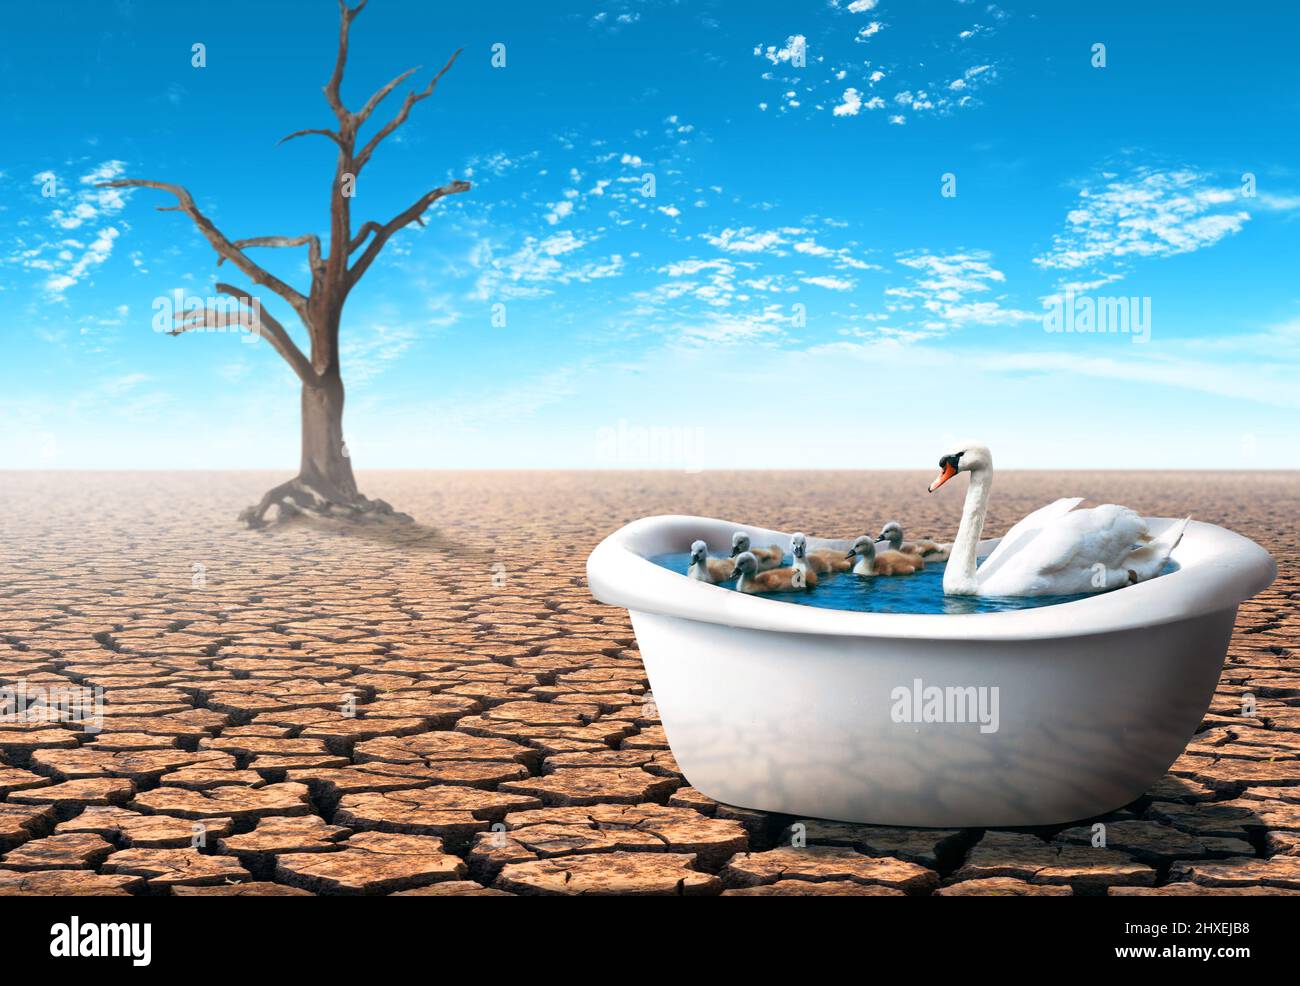 Swan con i suoi bambini dentro una vasca da bagno in un deserto asciutto. Concetto di tema pandemico. Foto Stock